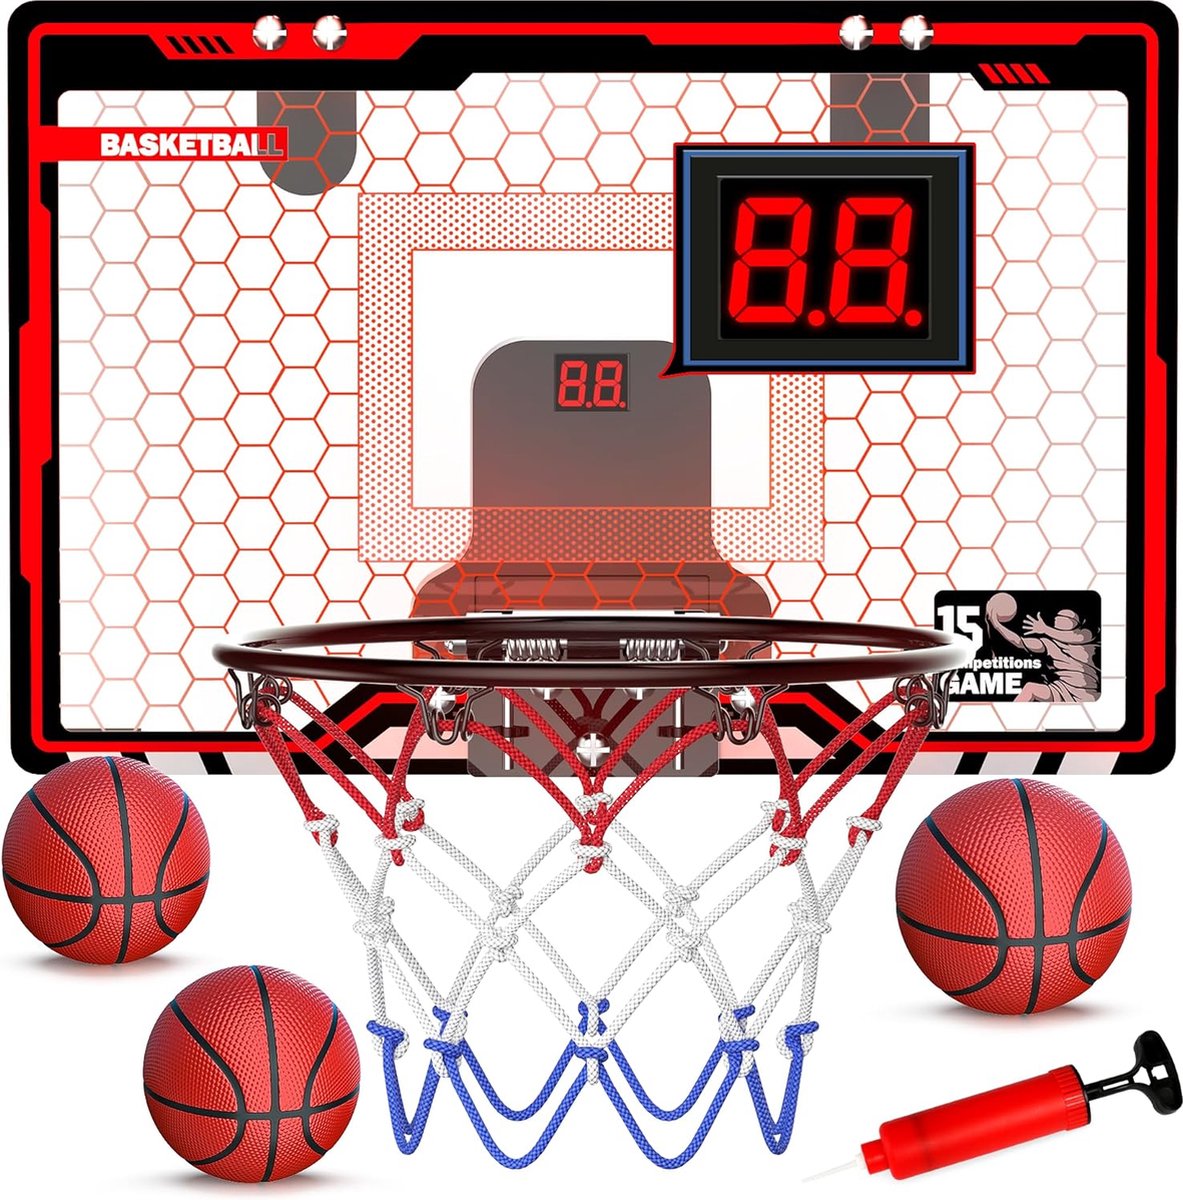 Mini Basketbalkorf Set voor Kinderen - Binnen Basketbalstandaard met Verstelbare Hoogte - Inclusief Mini Basketbal - Duurzame Constructie - Compact Formaat - Basketbalspel voor Thuis of Kantoor - Ayangoods